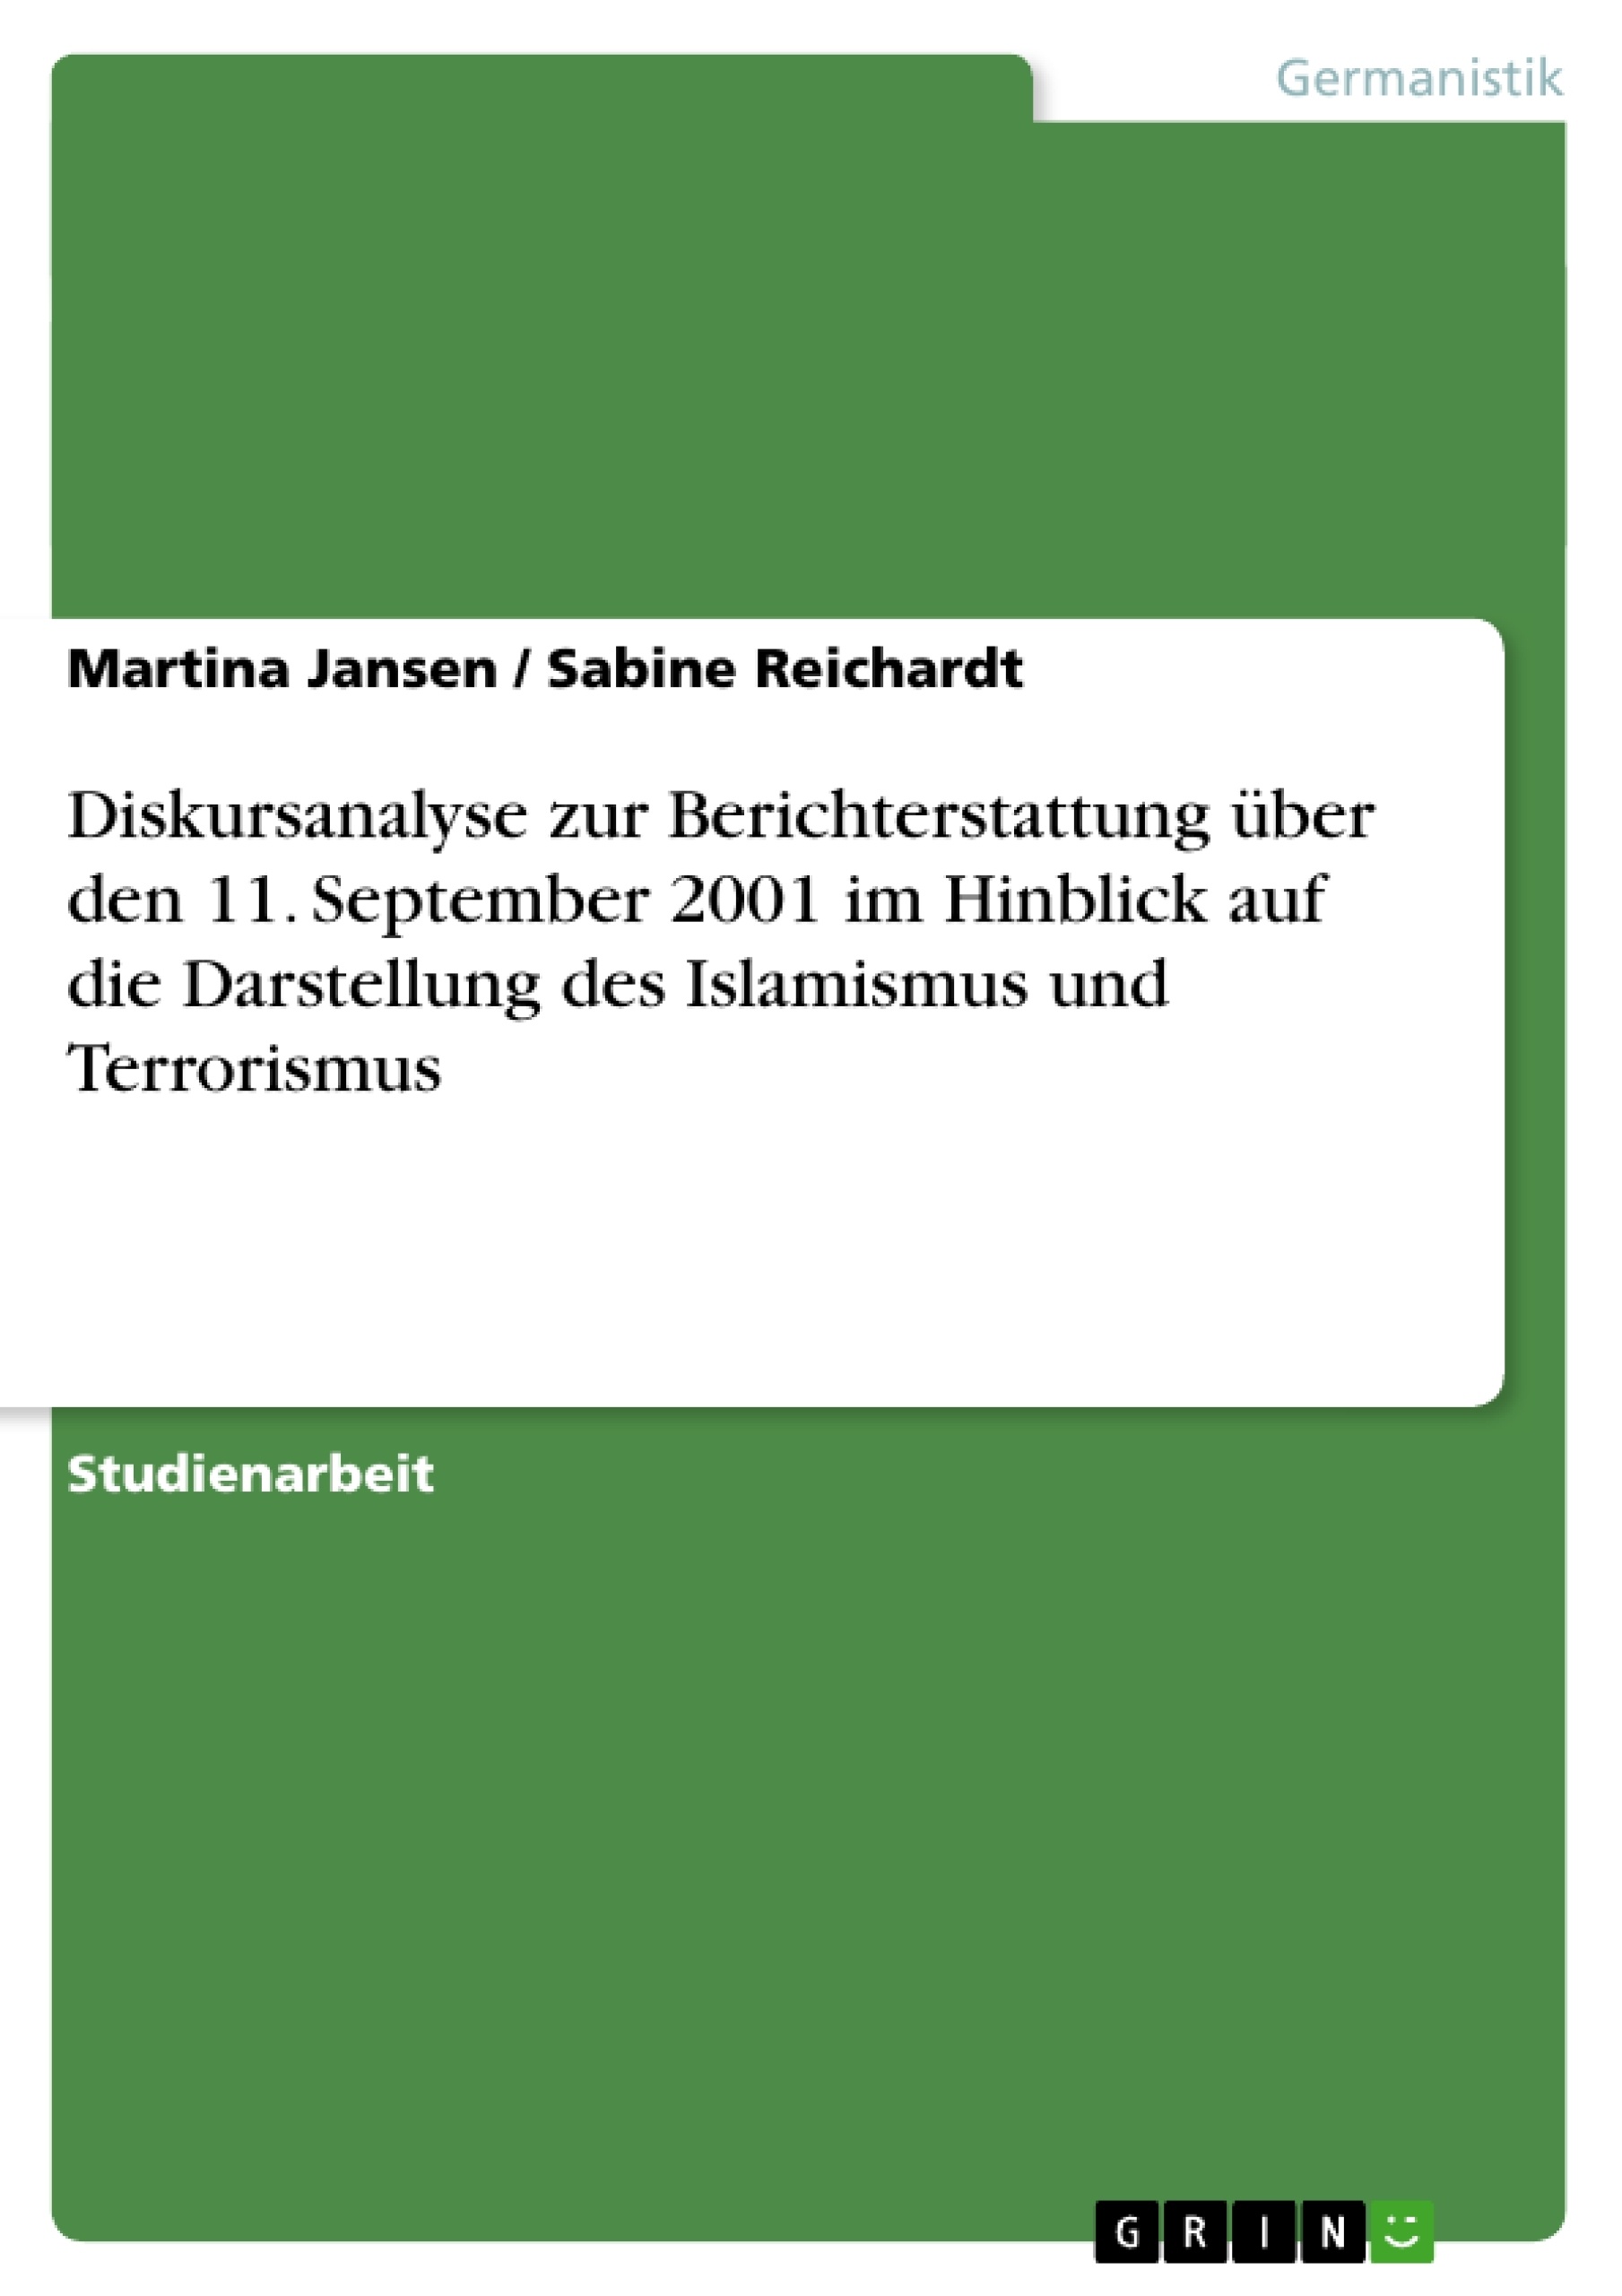 Title: Diskursanalyse zur Berichterstattung über den 11. September 2001 im Hinblick auf die Darstellung des Islamismus und Terrorismus